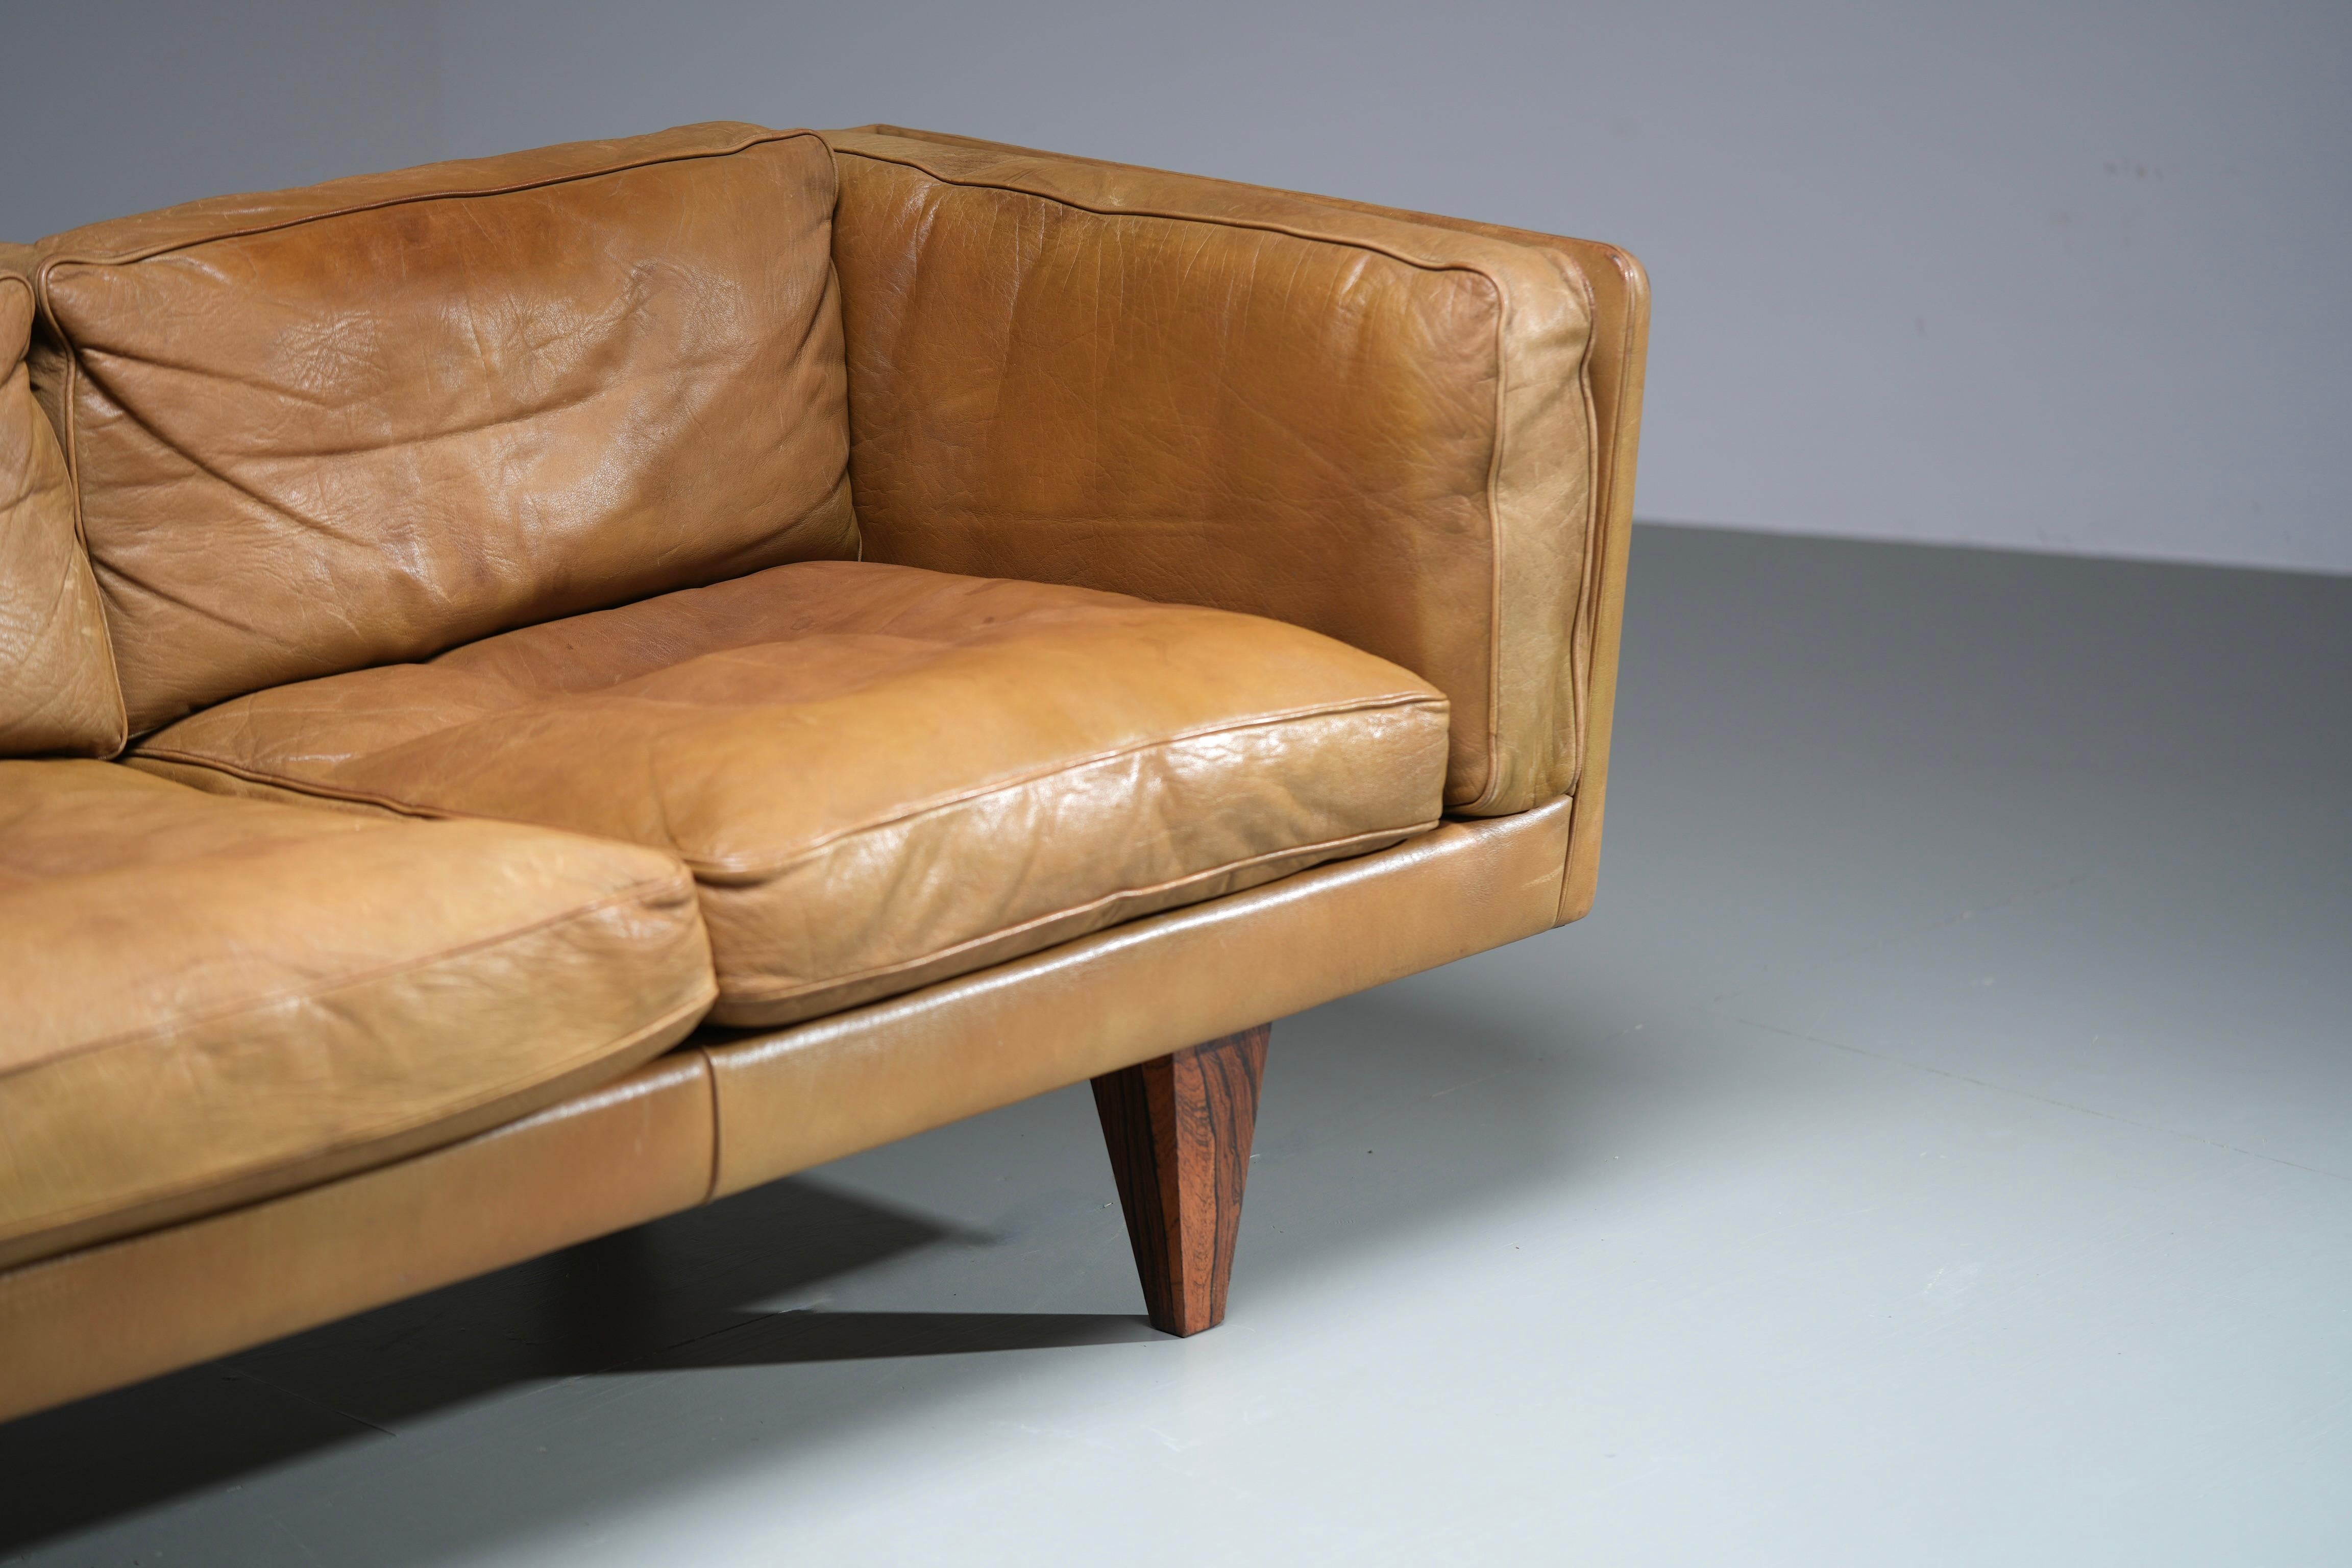 Illum Wikkelsø Three-Seat ‘V11’ Sofa in Cognac Leather, Denmark, 1960s For Sale 3